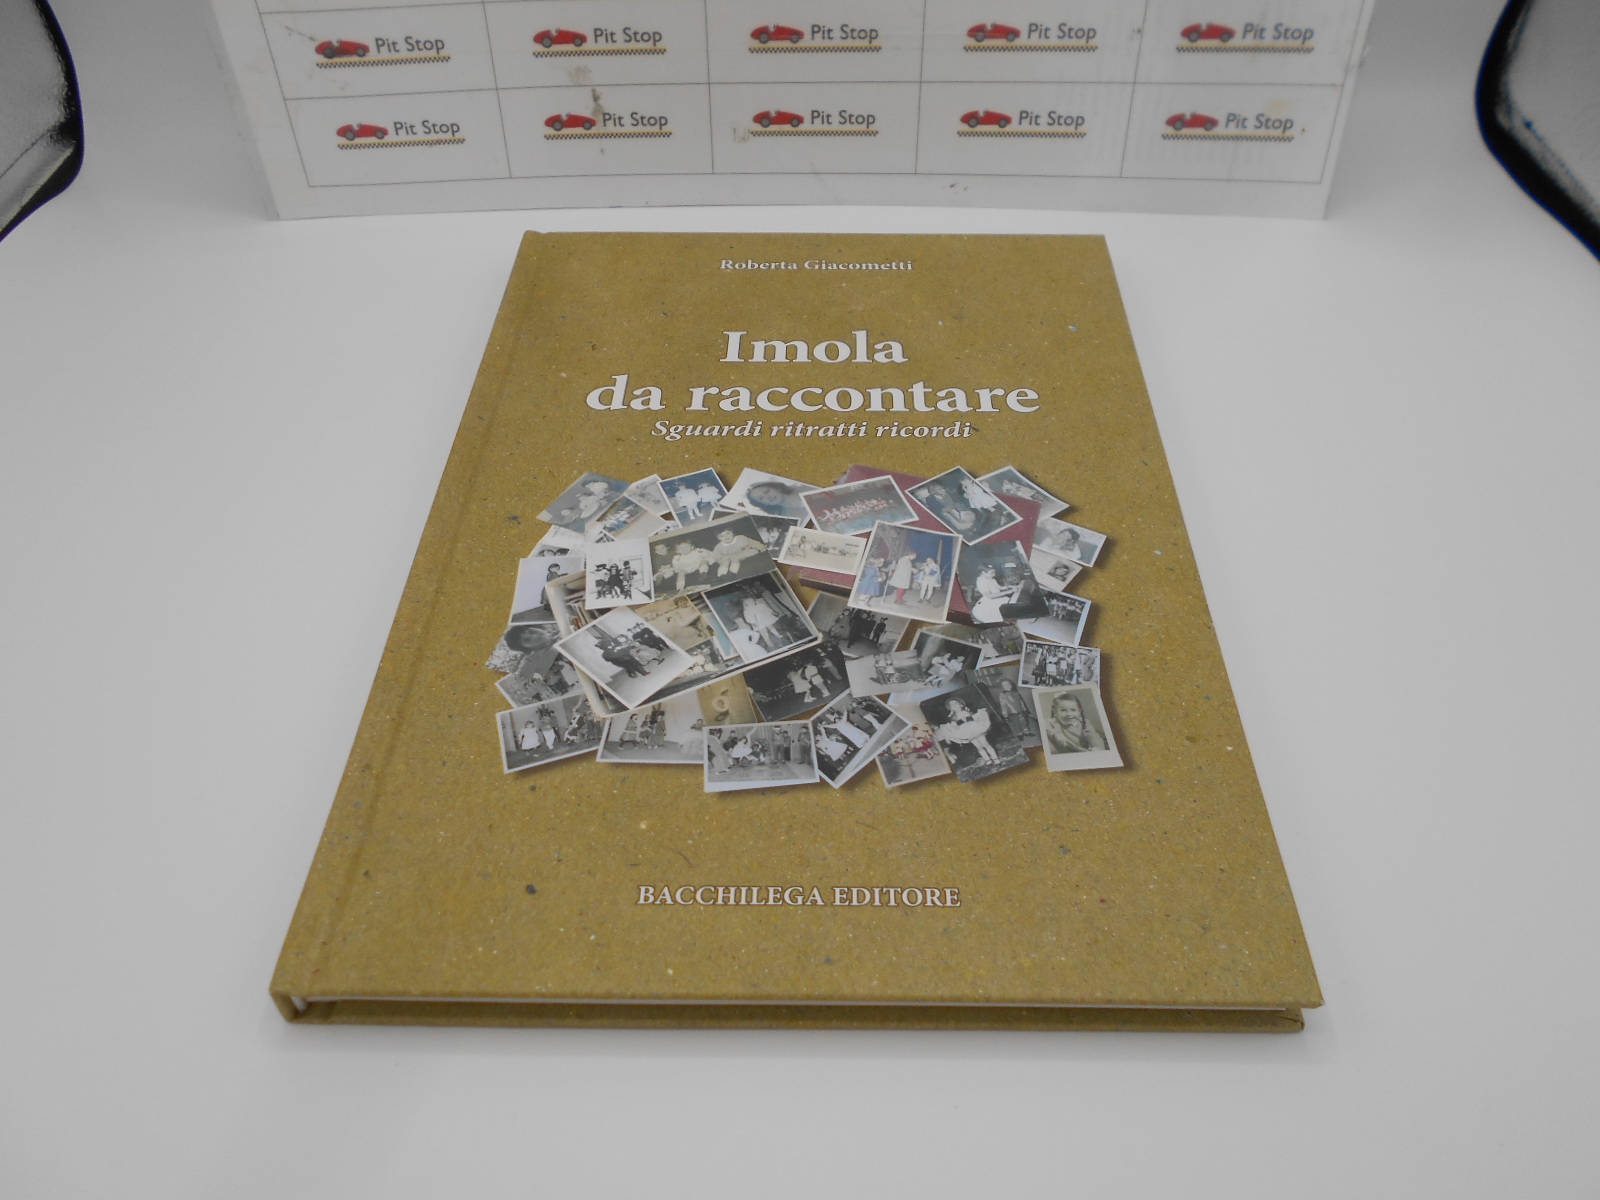 ANTQ98 Imola da raccontare, libro illustrato in lingua italiana